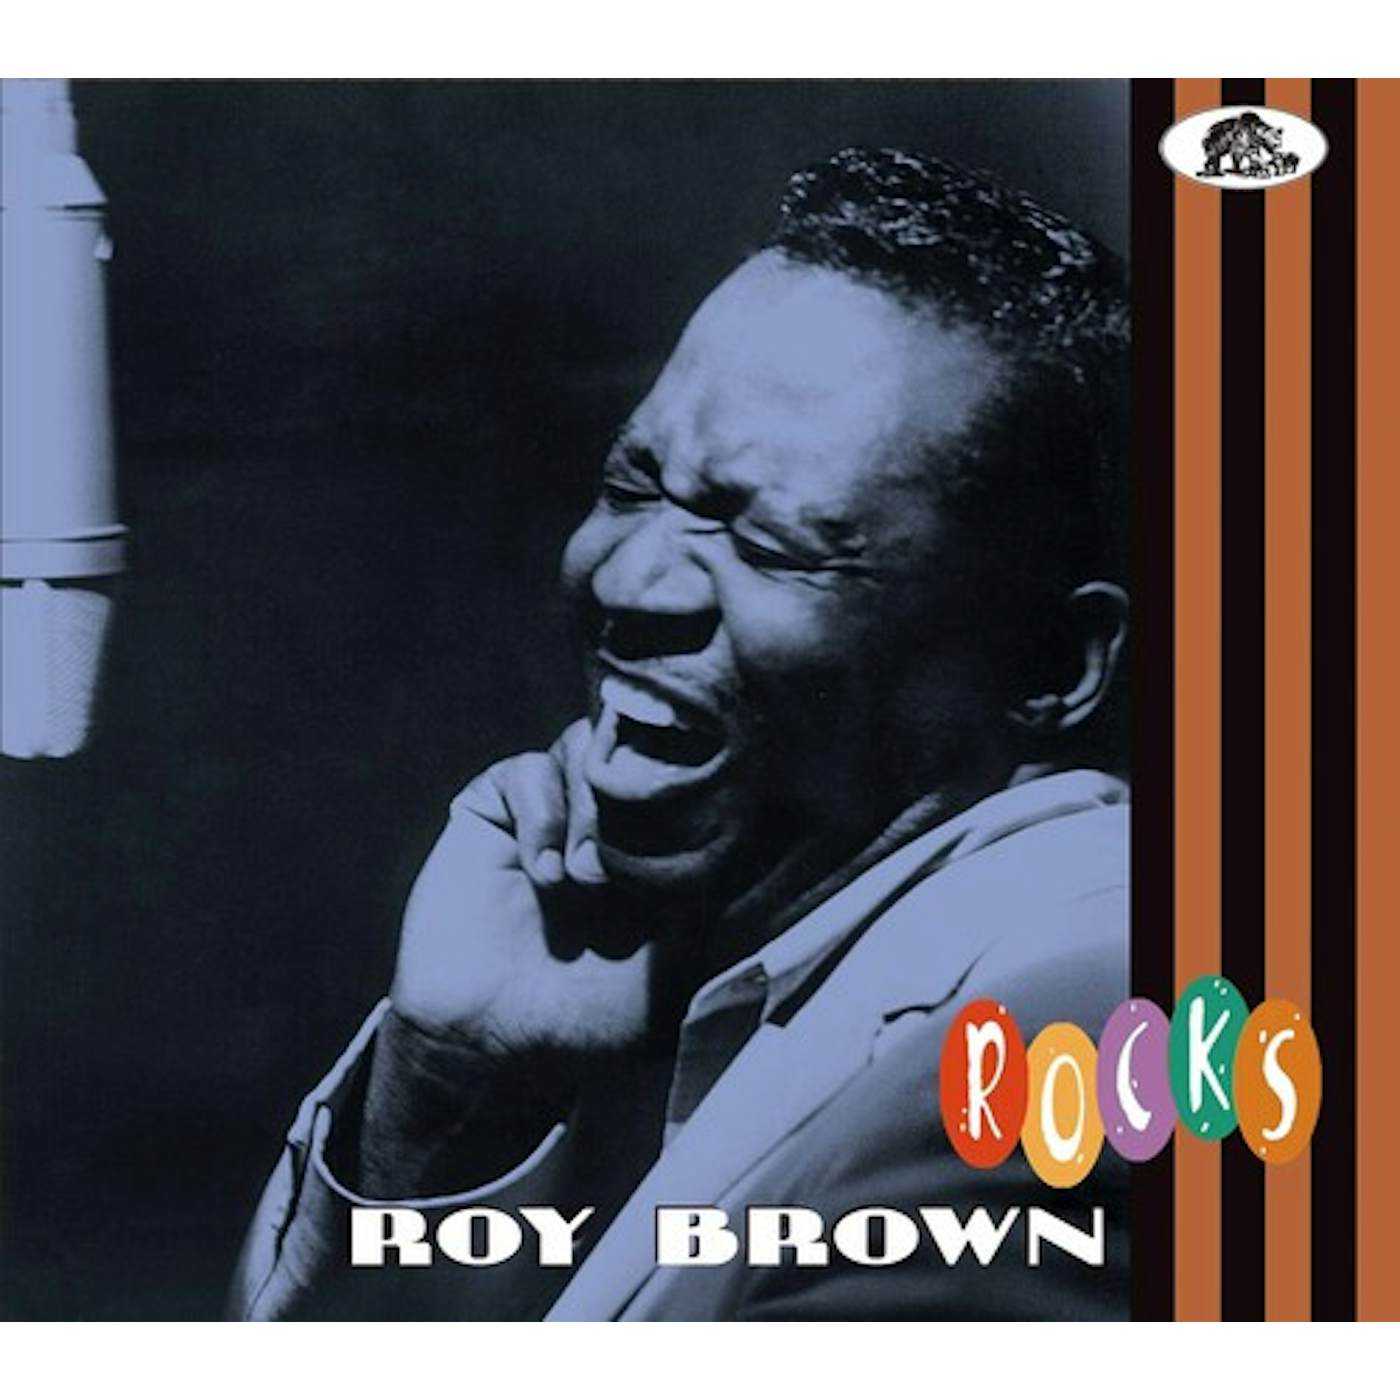 Roy Brown ROCKS CD